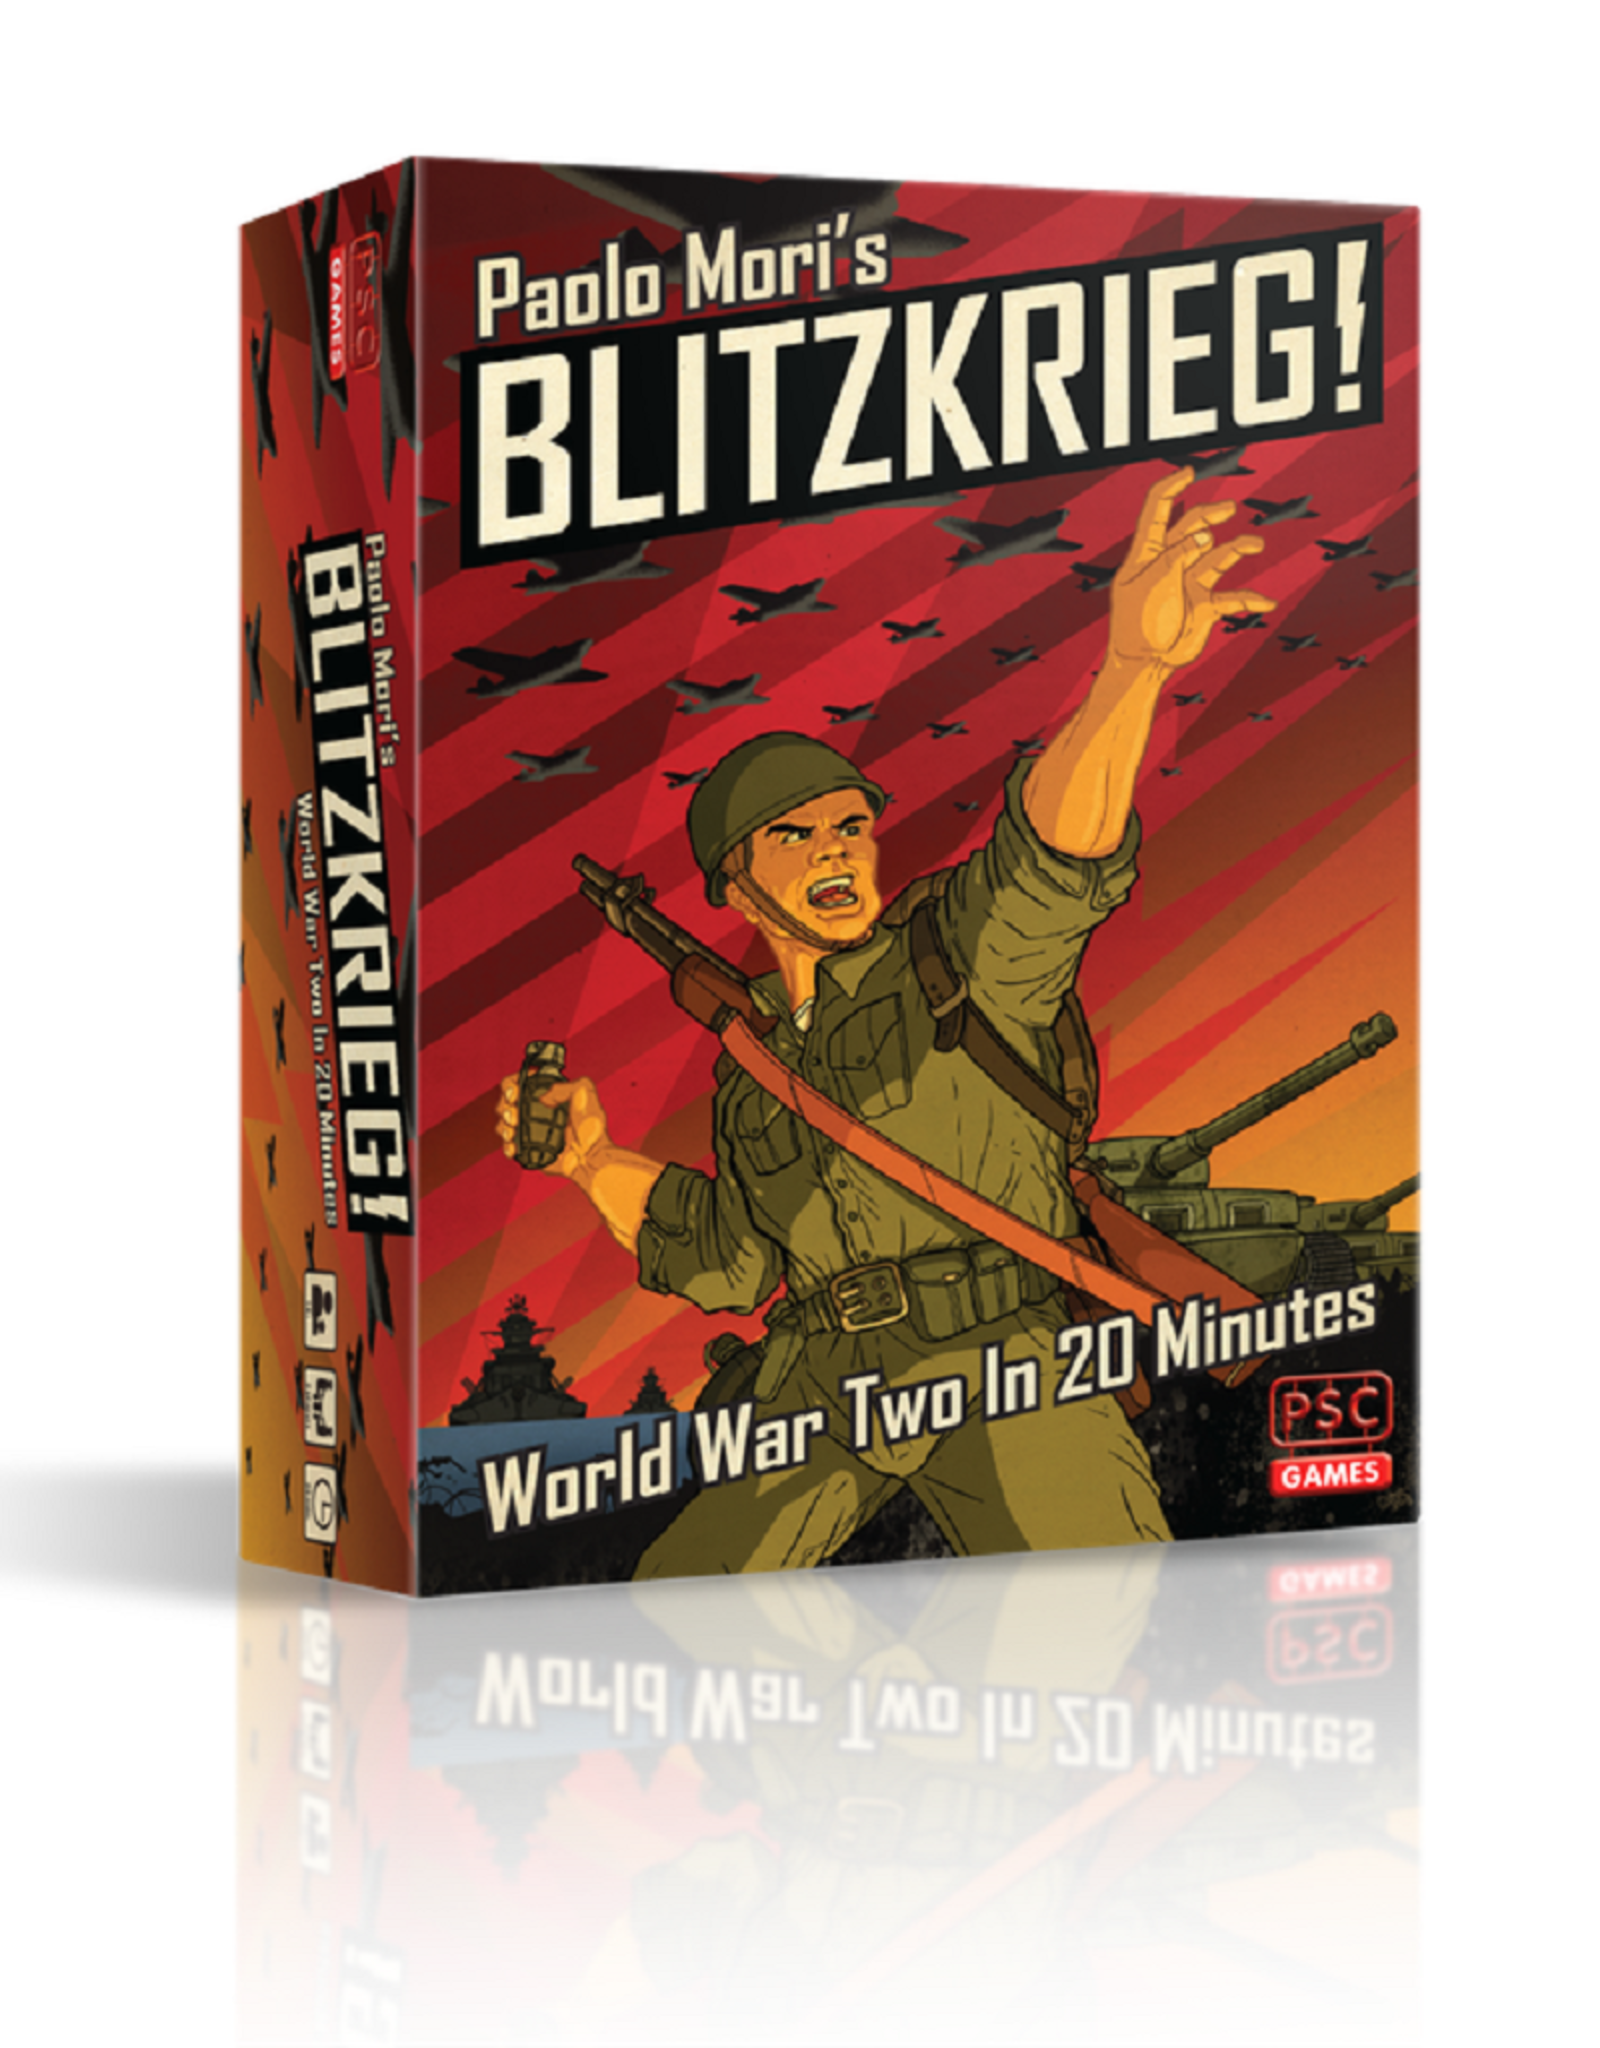 Plastic Soldier Company Blitzkrieg! board game